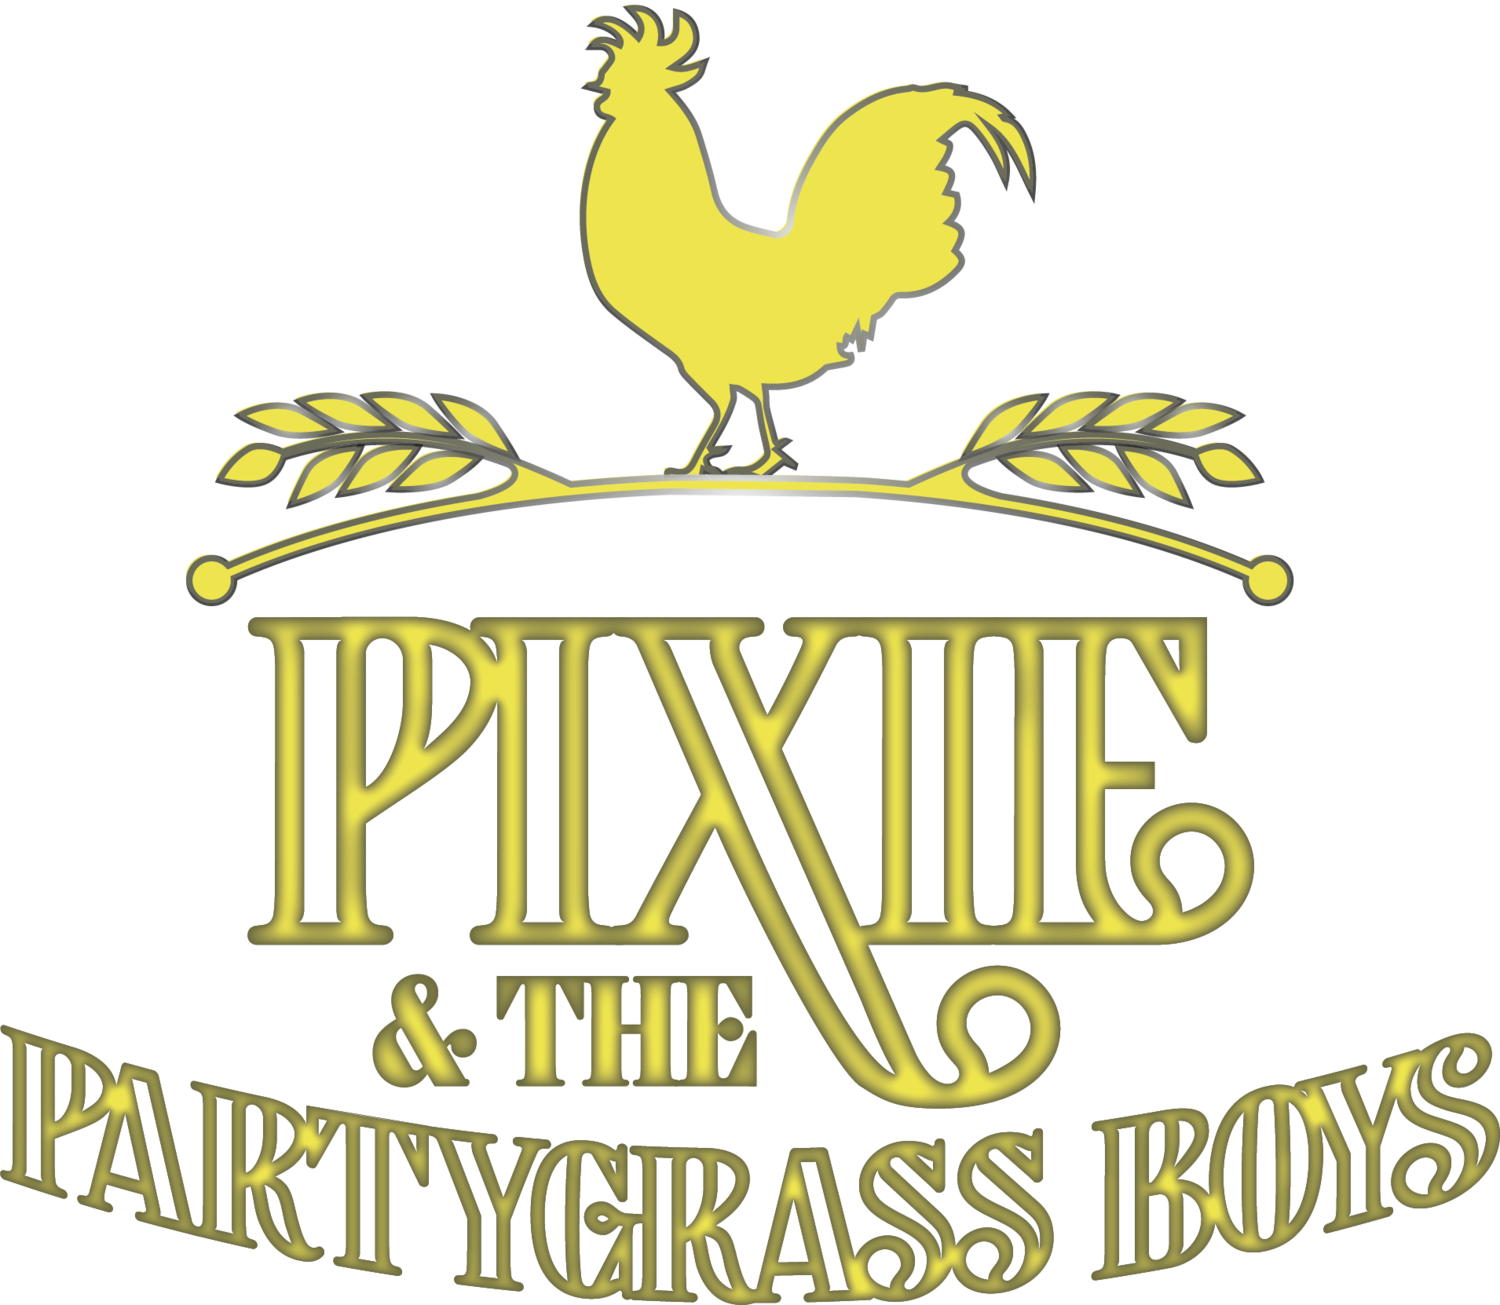 Pixie & The Partygrass Boys